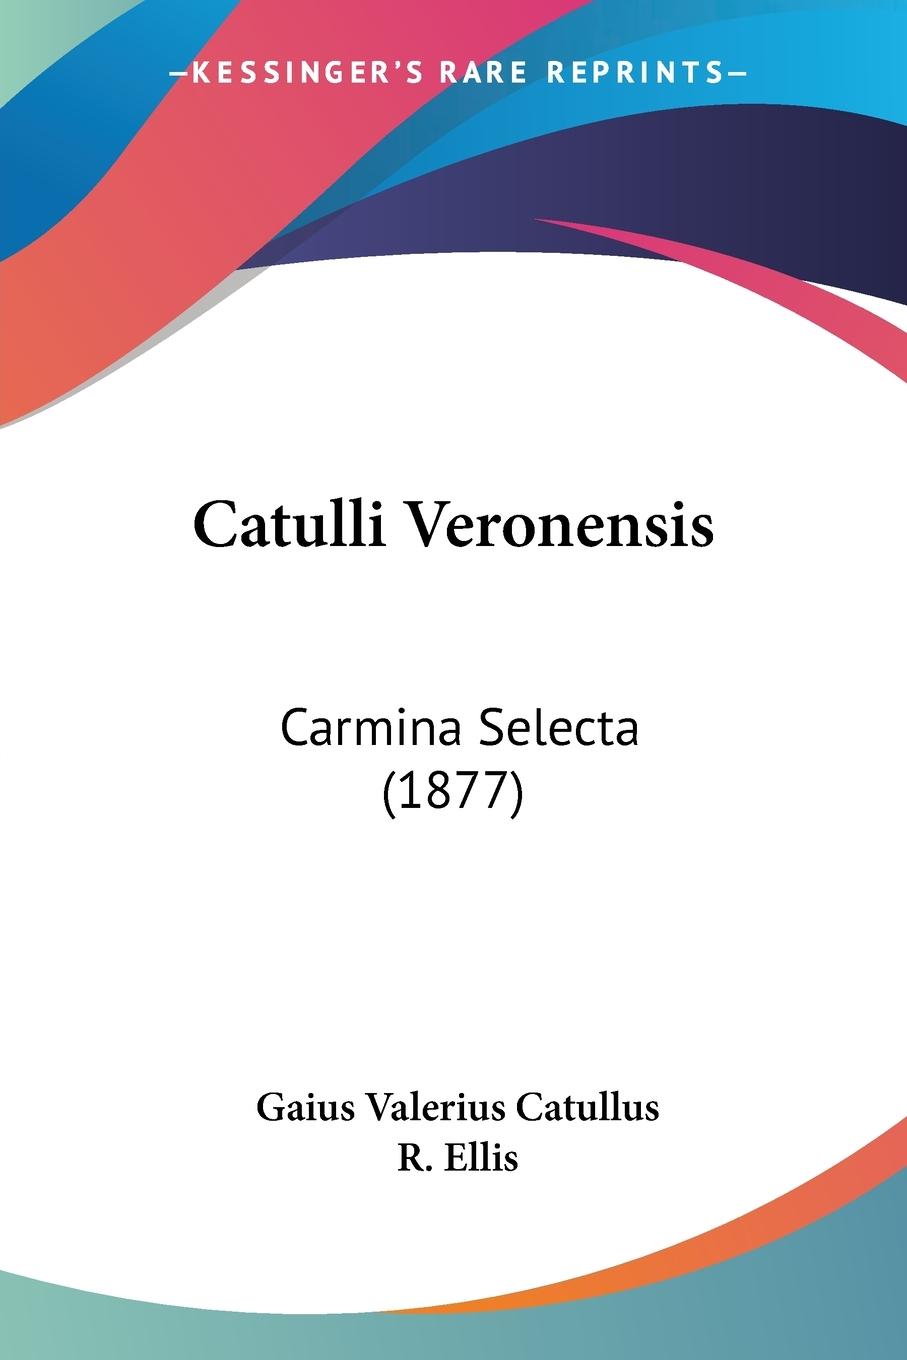 Catulli Veronensis - Catullus, Gaius Valerius